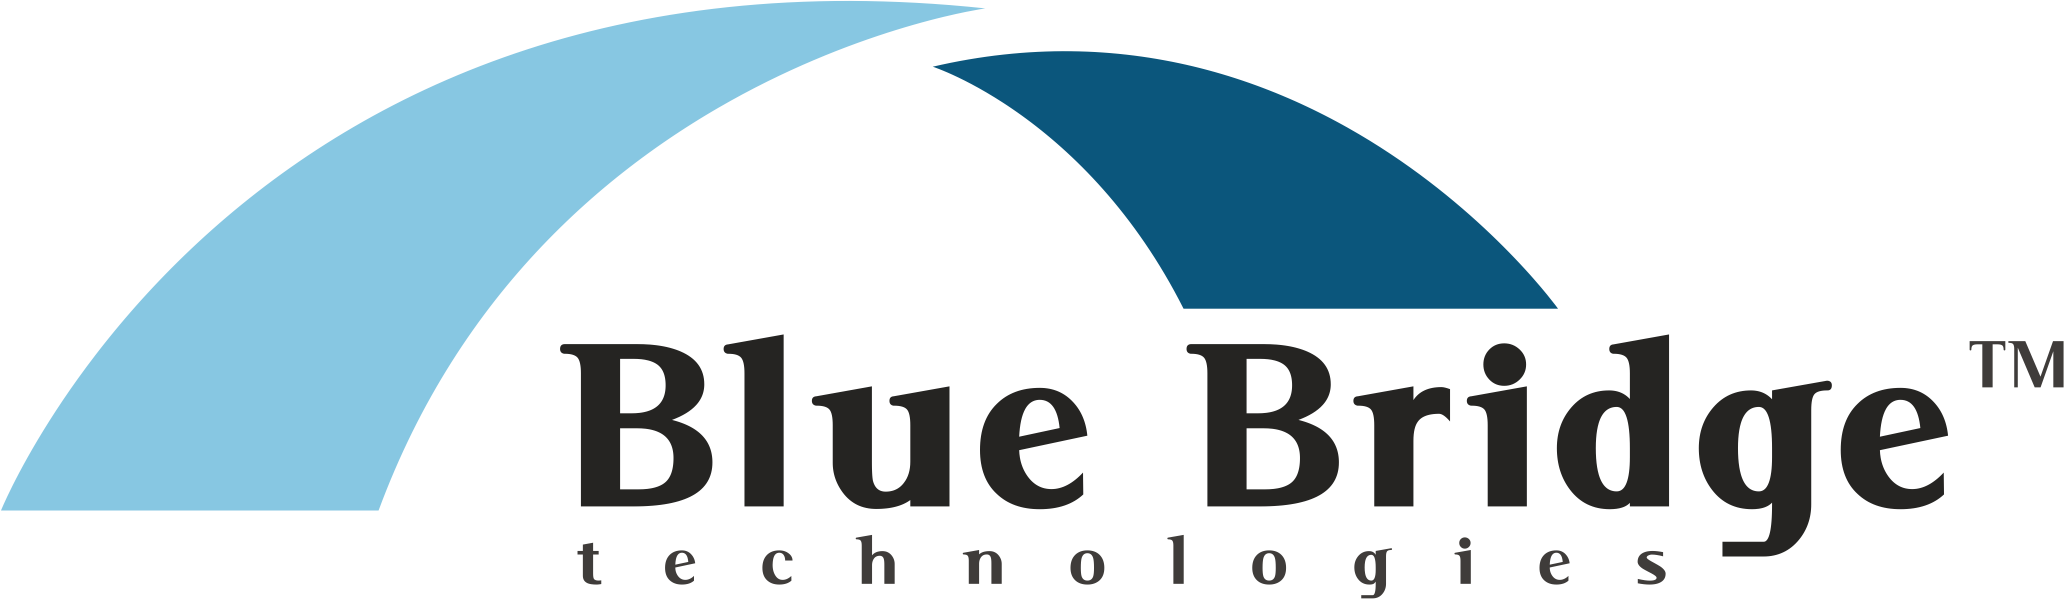 Blue Bridge Technologies DEAC